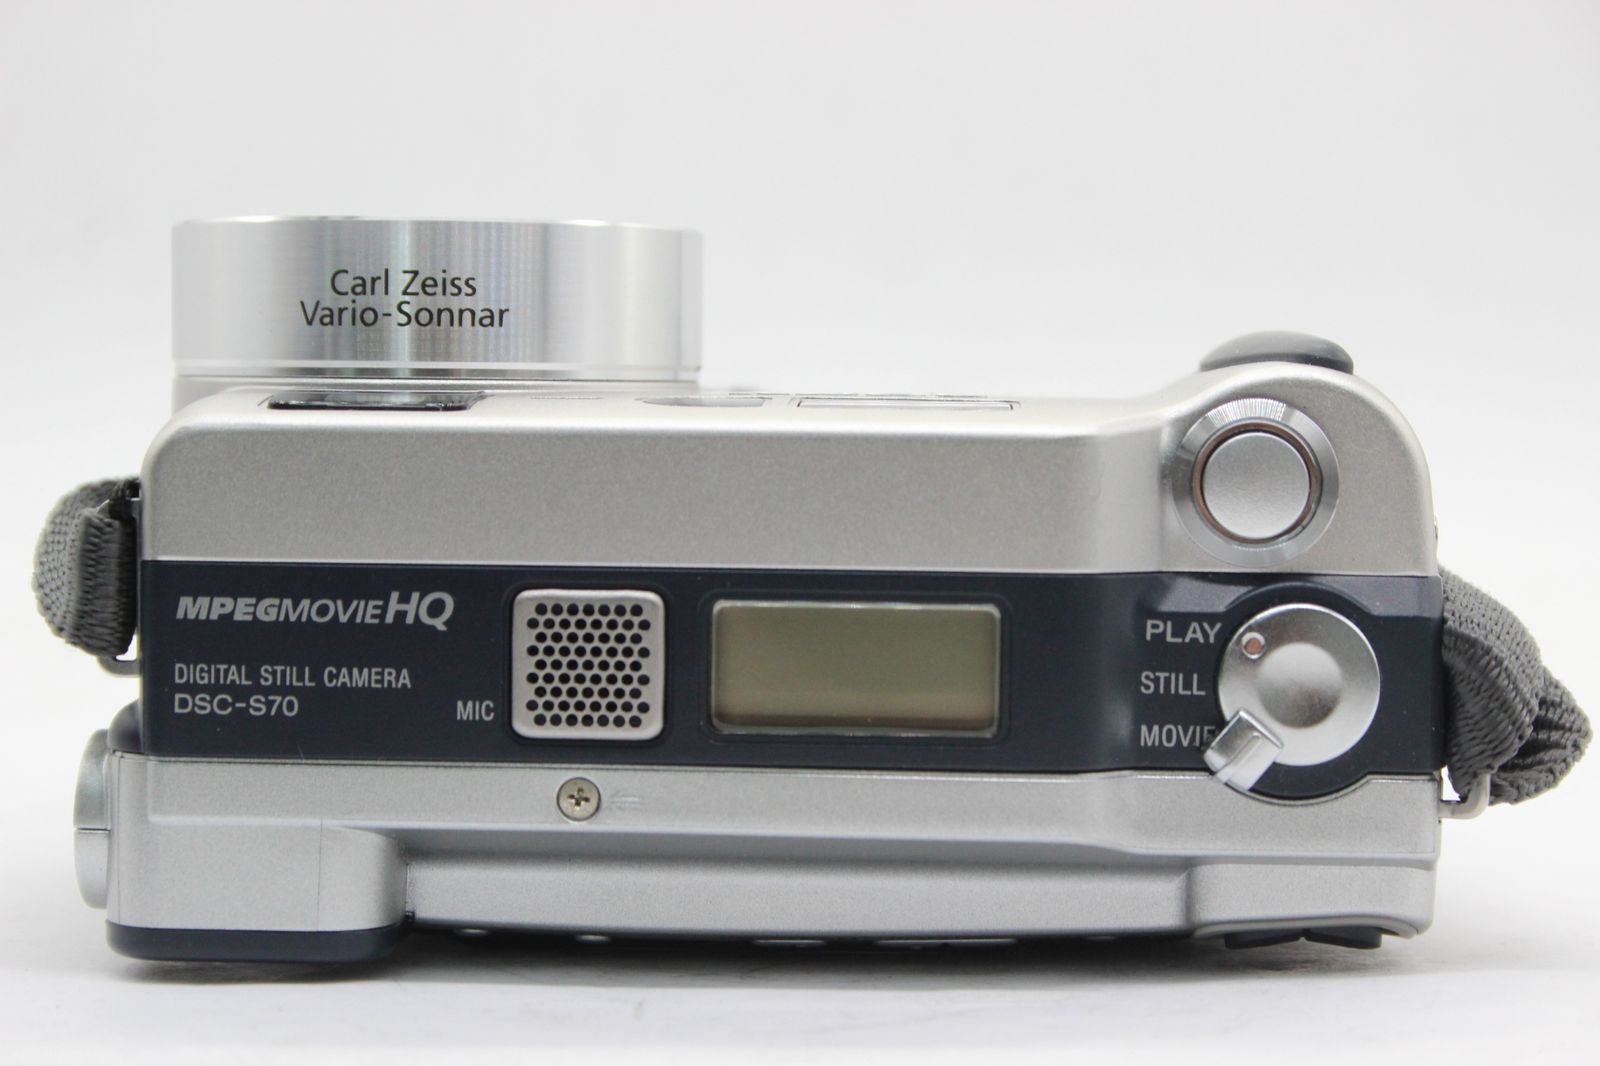 SONY 【返品保証】 ソニー SONY Cyber-shot DSC-S70 6x バッテリー付き コンパクトデジタルカメラ v1449